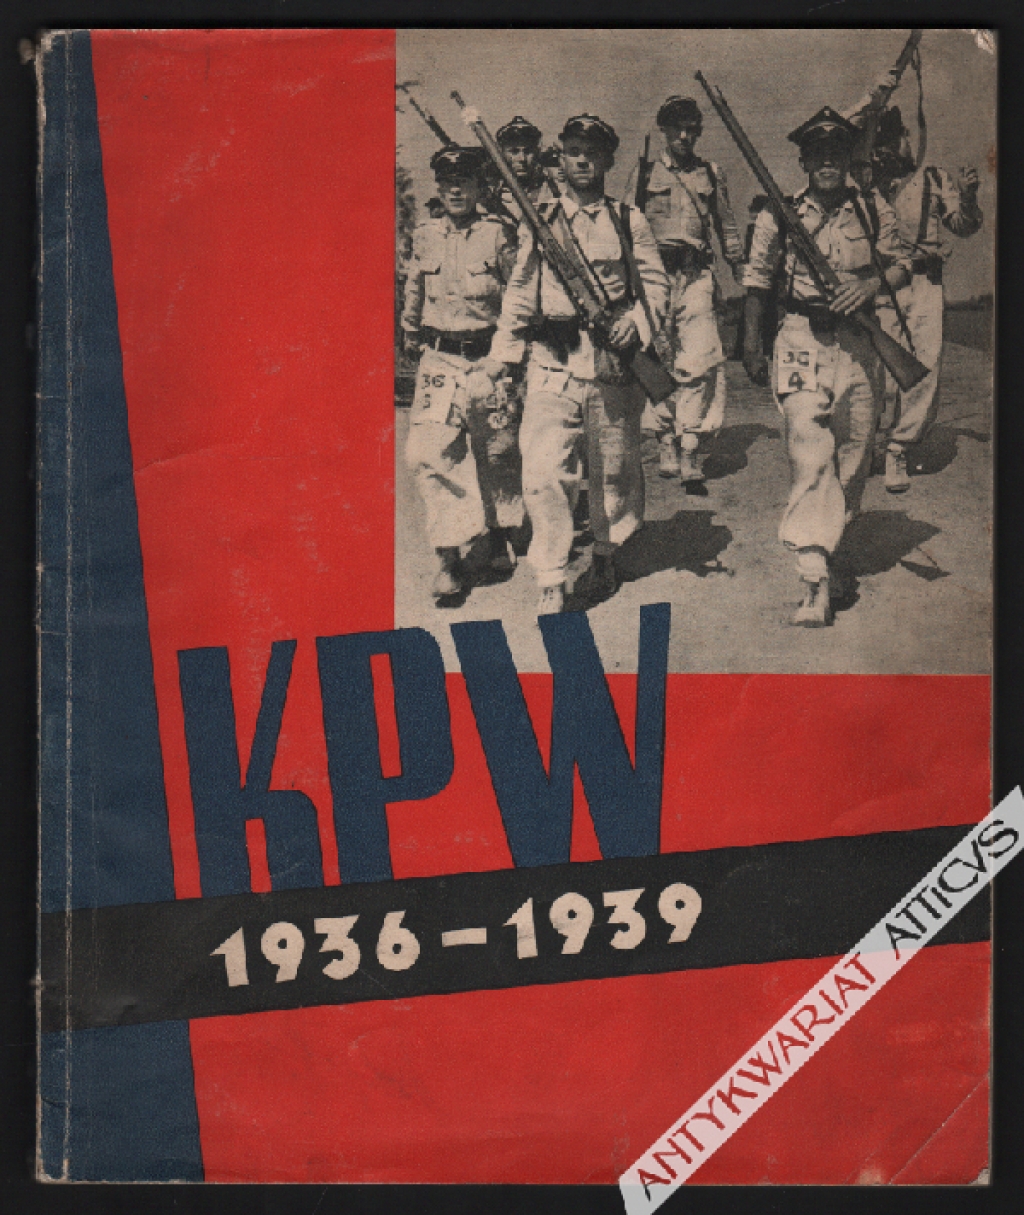 Sprawozdanie Zarządu Głównego Kolejowego Przysposobienia Wojskowego z działalności w okresie 1936/39 r.